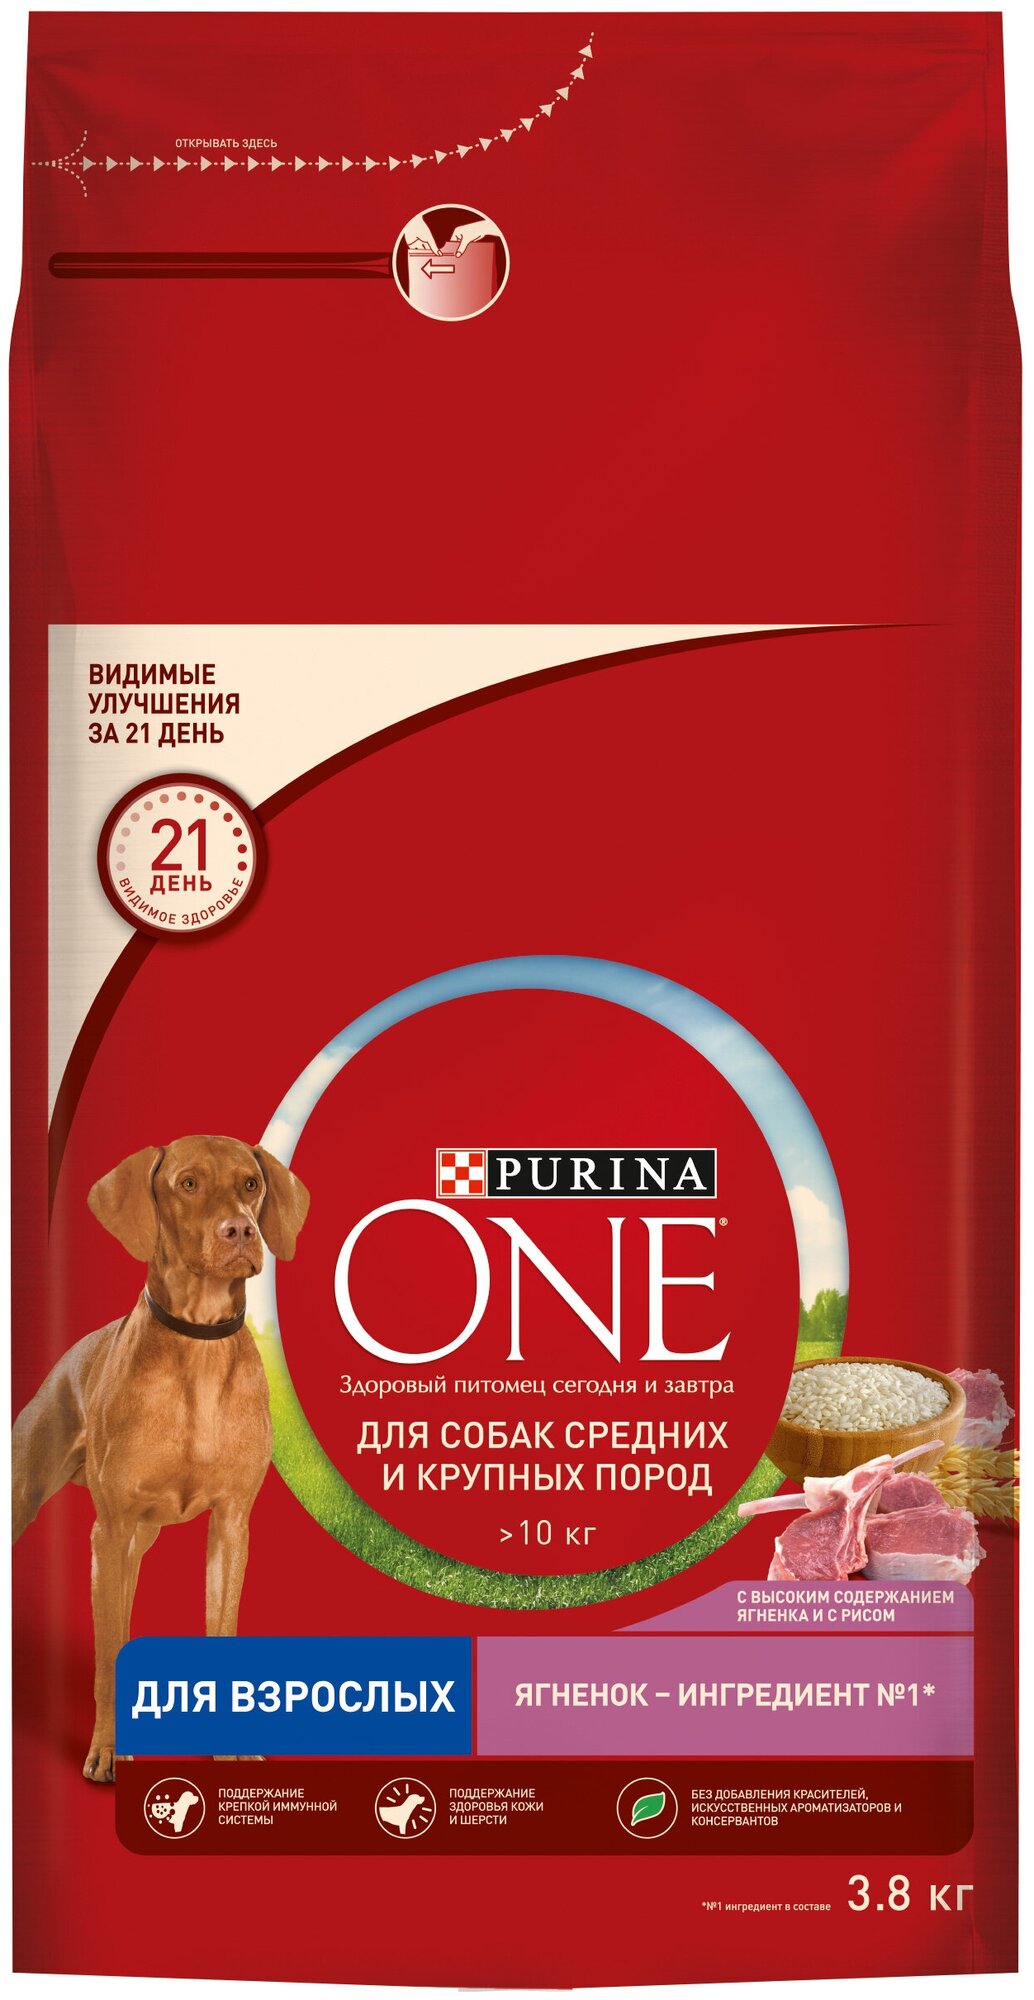 Сухой корм Purina ONE для взрослых собак средних и крупных пород, с высоким содержанием ягненка и рисом, 10кг - фото №19